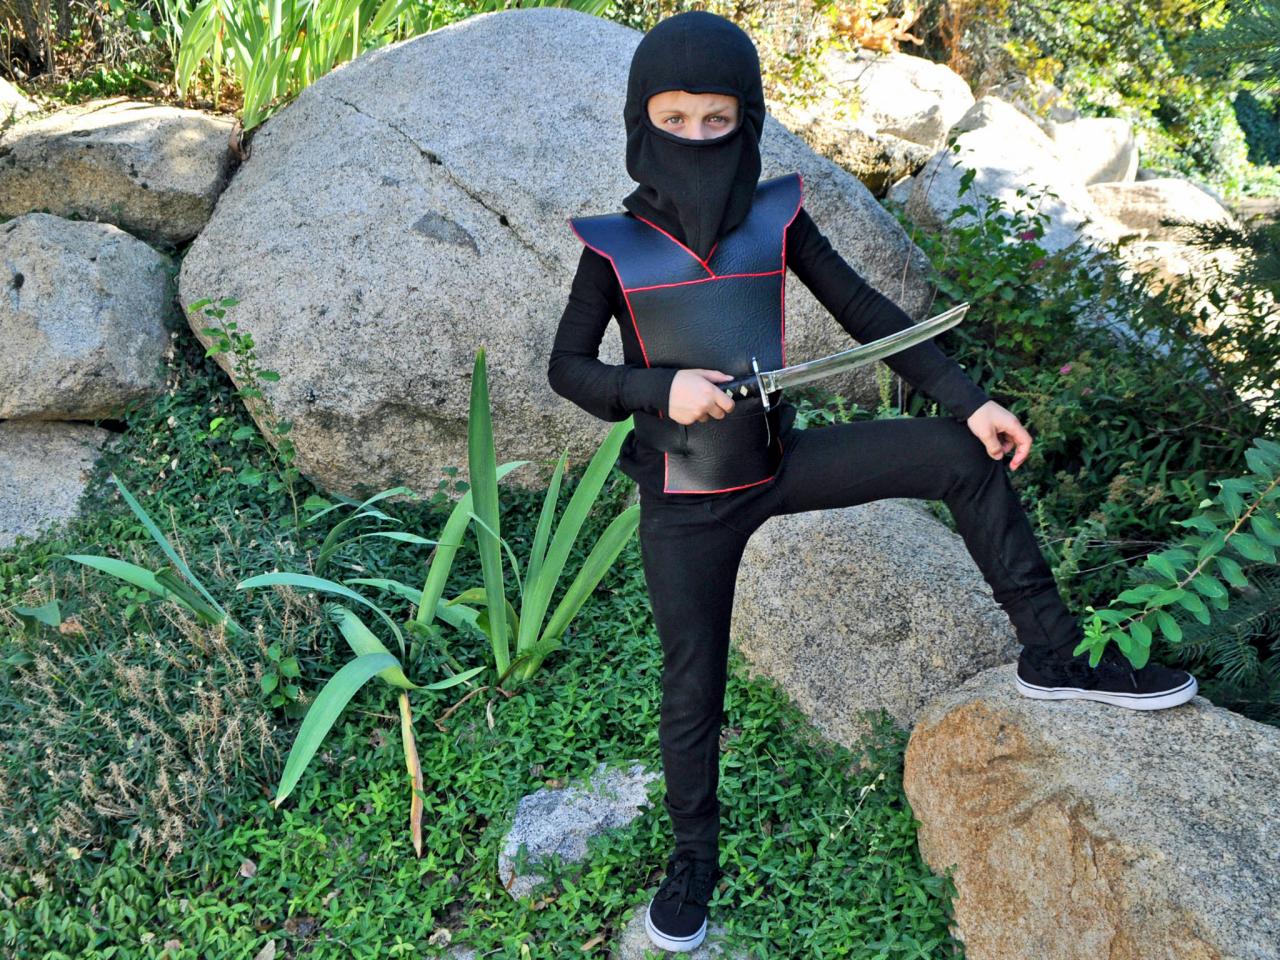 Easy DIY Ninja Costume for Kids | HGTV